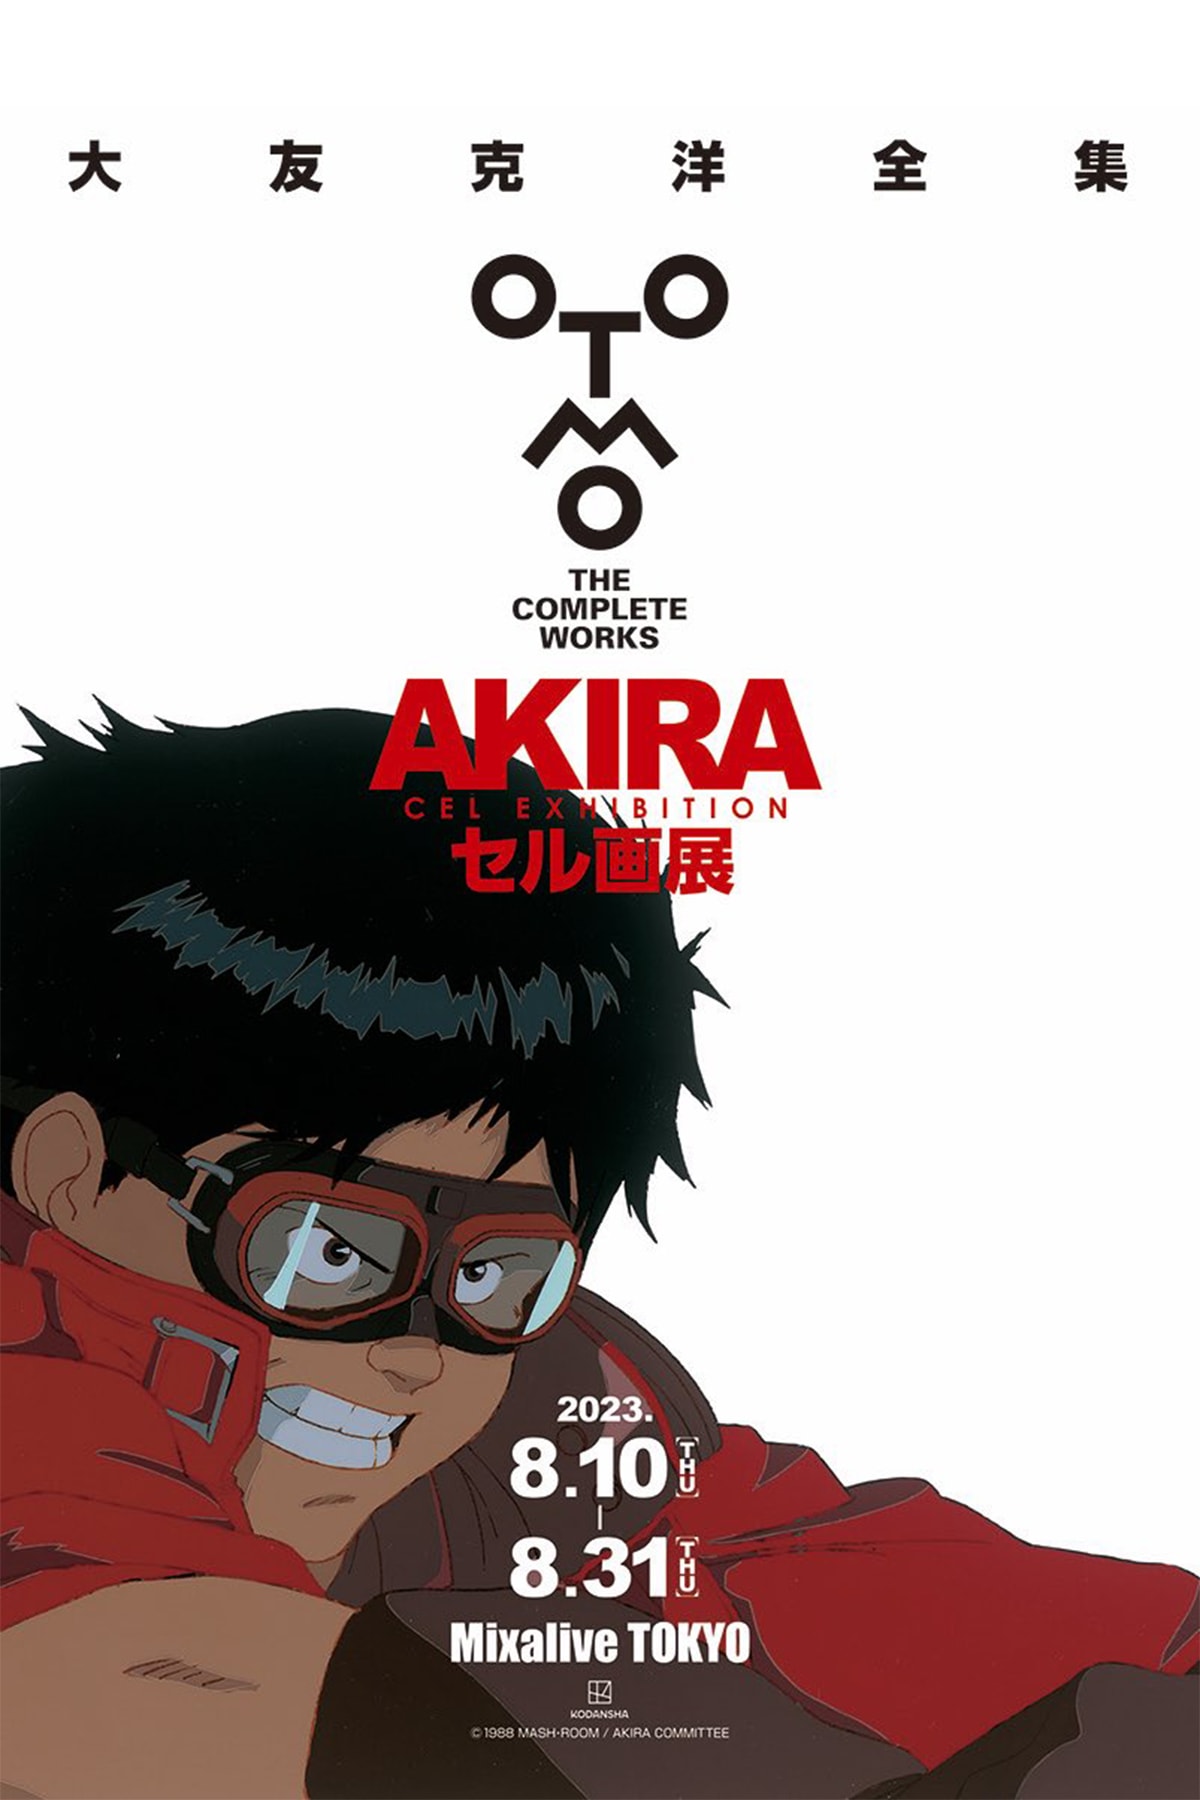 大友克洋經典動漫《阿基拉 AKIRA》全新展覽宣布將前進大阪